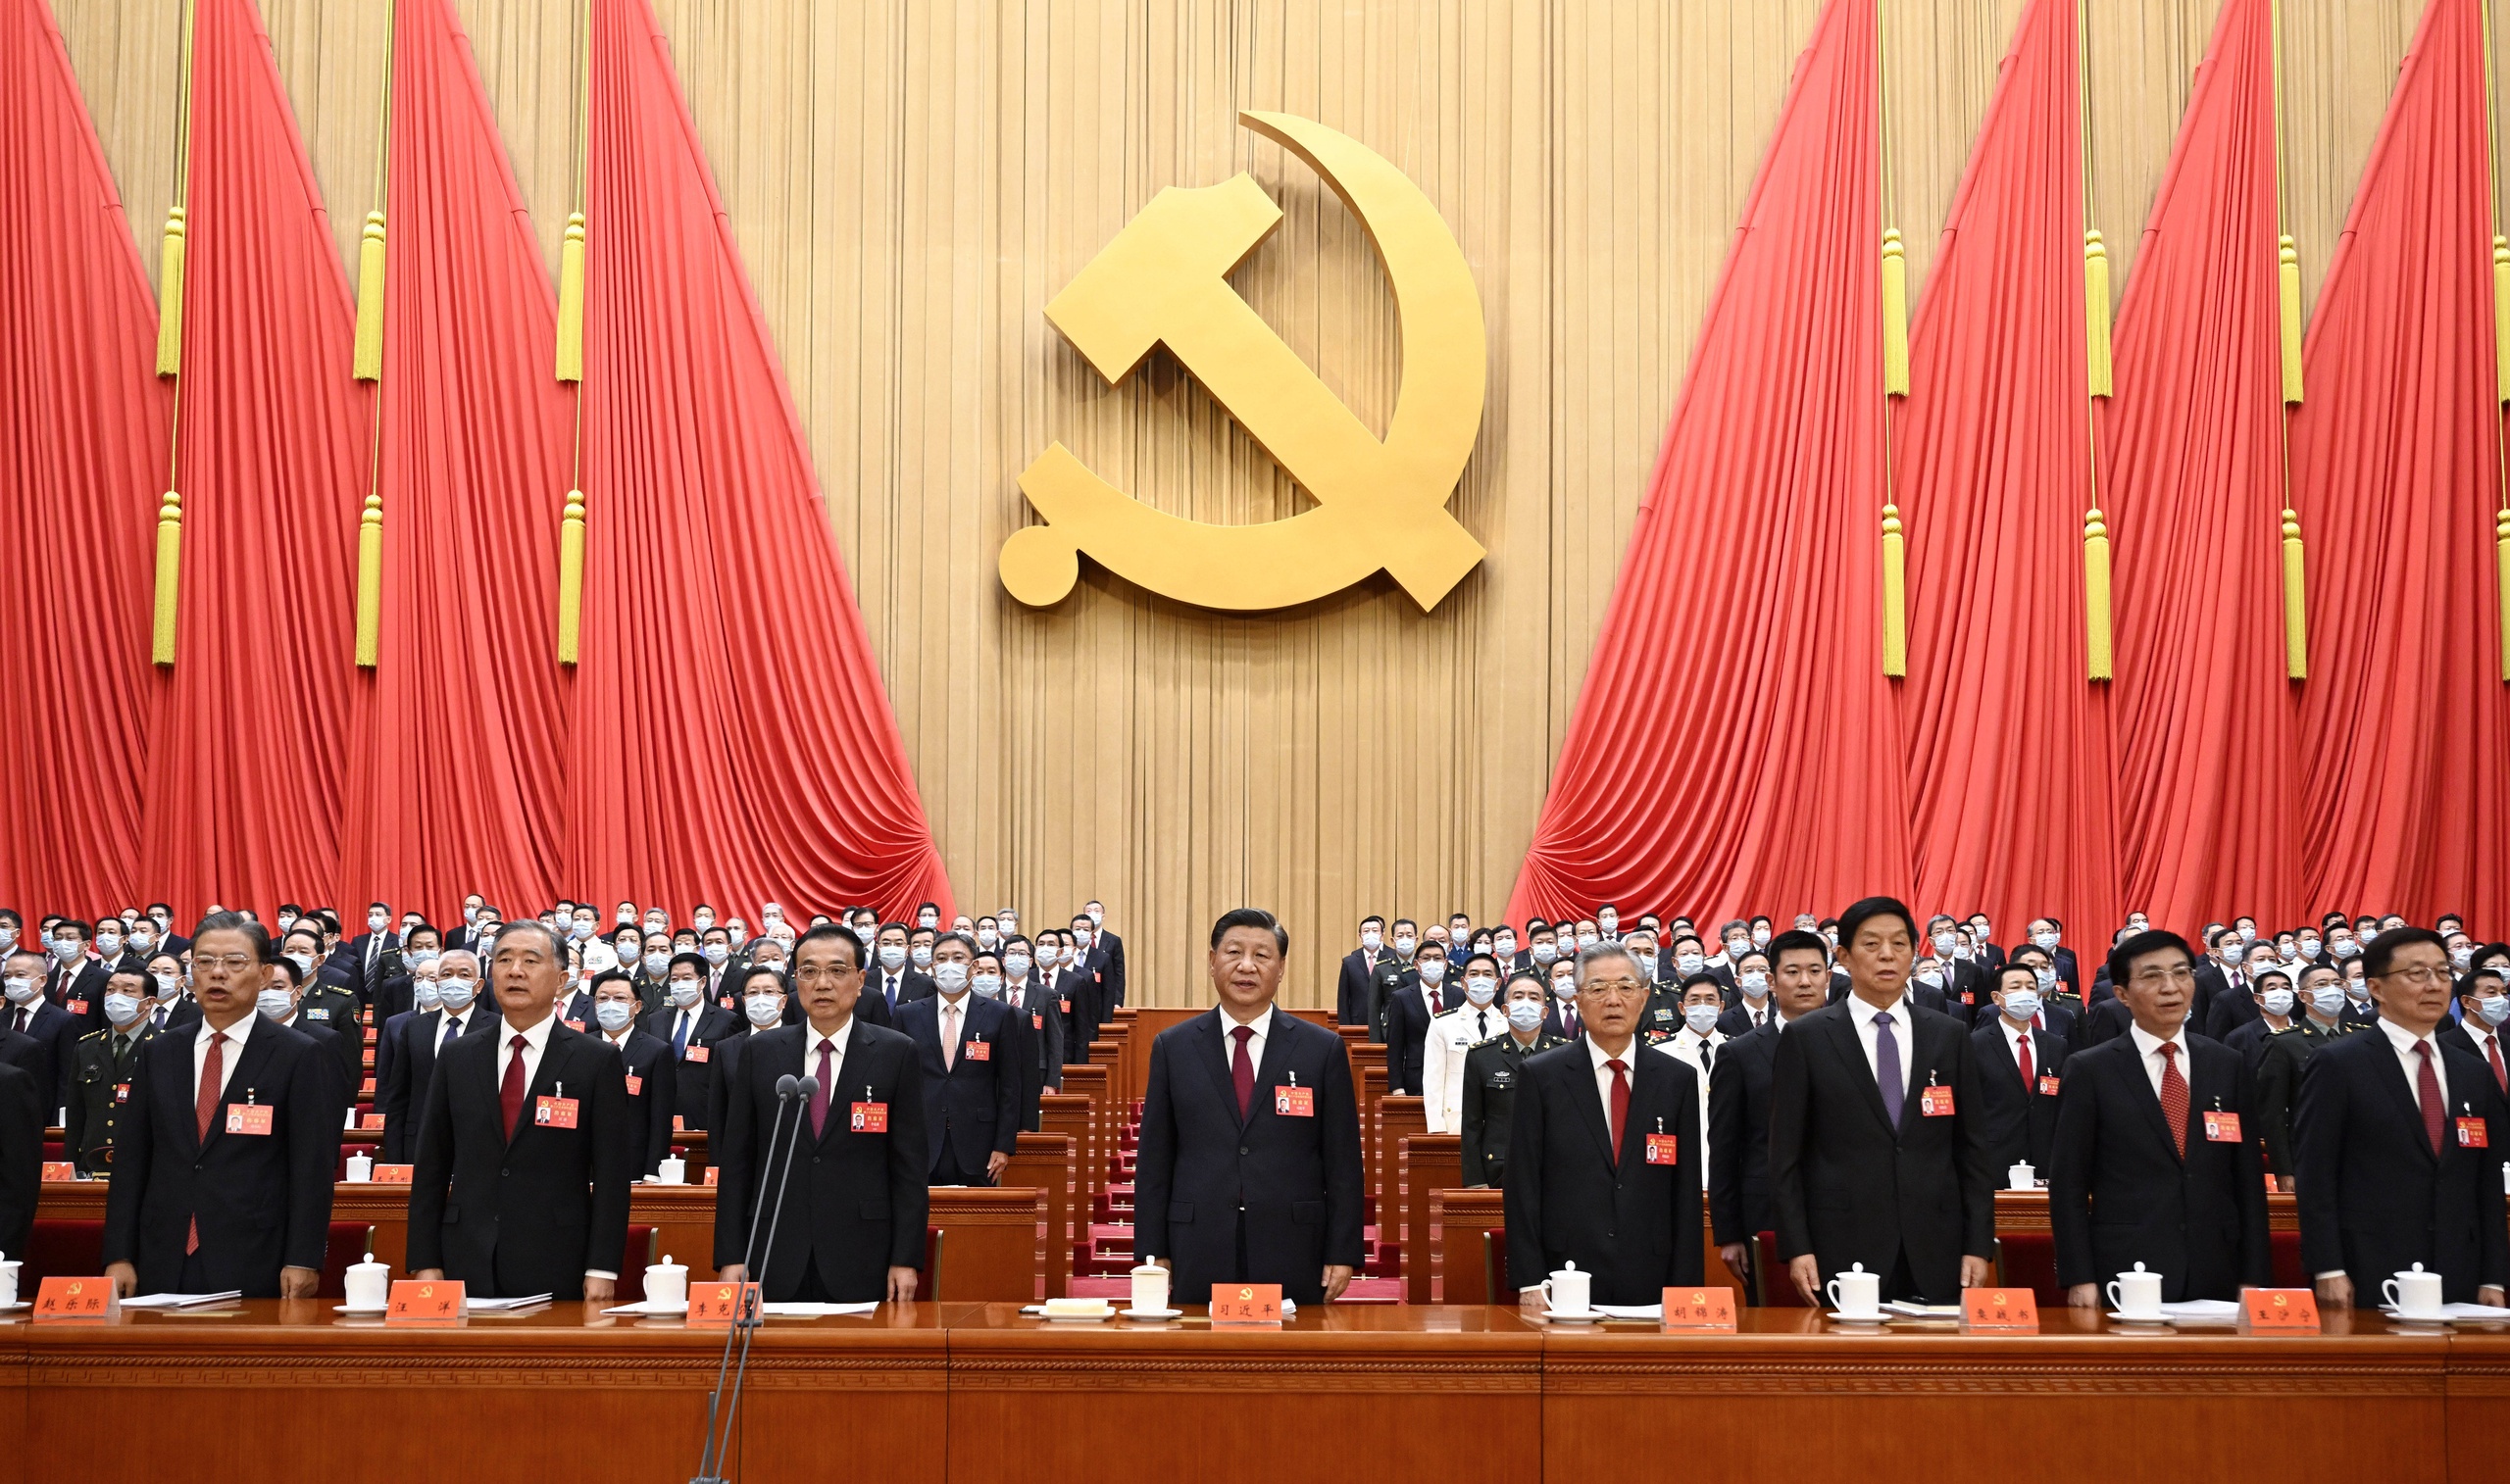 In Beijing heeft de Chinese leider Xi Jinping de aftrap gegeven van het twintigste  partijcongres van de Chinese Communistische Partij. Xi krijgt daar waarschijnlijk een historische derde termijn als secretaris-generaal. In zijn openingsspeech verdedigde hij zijn strenge zero-Covidbeleid, prees hij de manier waarop Hong Kong de democratisering de kop indrukte en waarschuwde hij dat Taiwan bij China hoort.